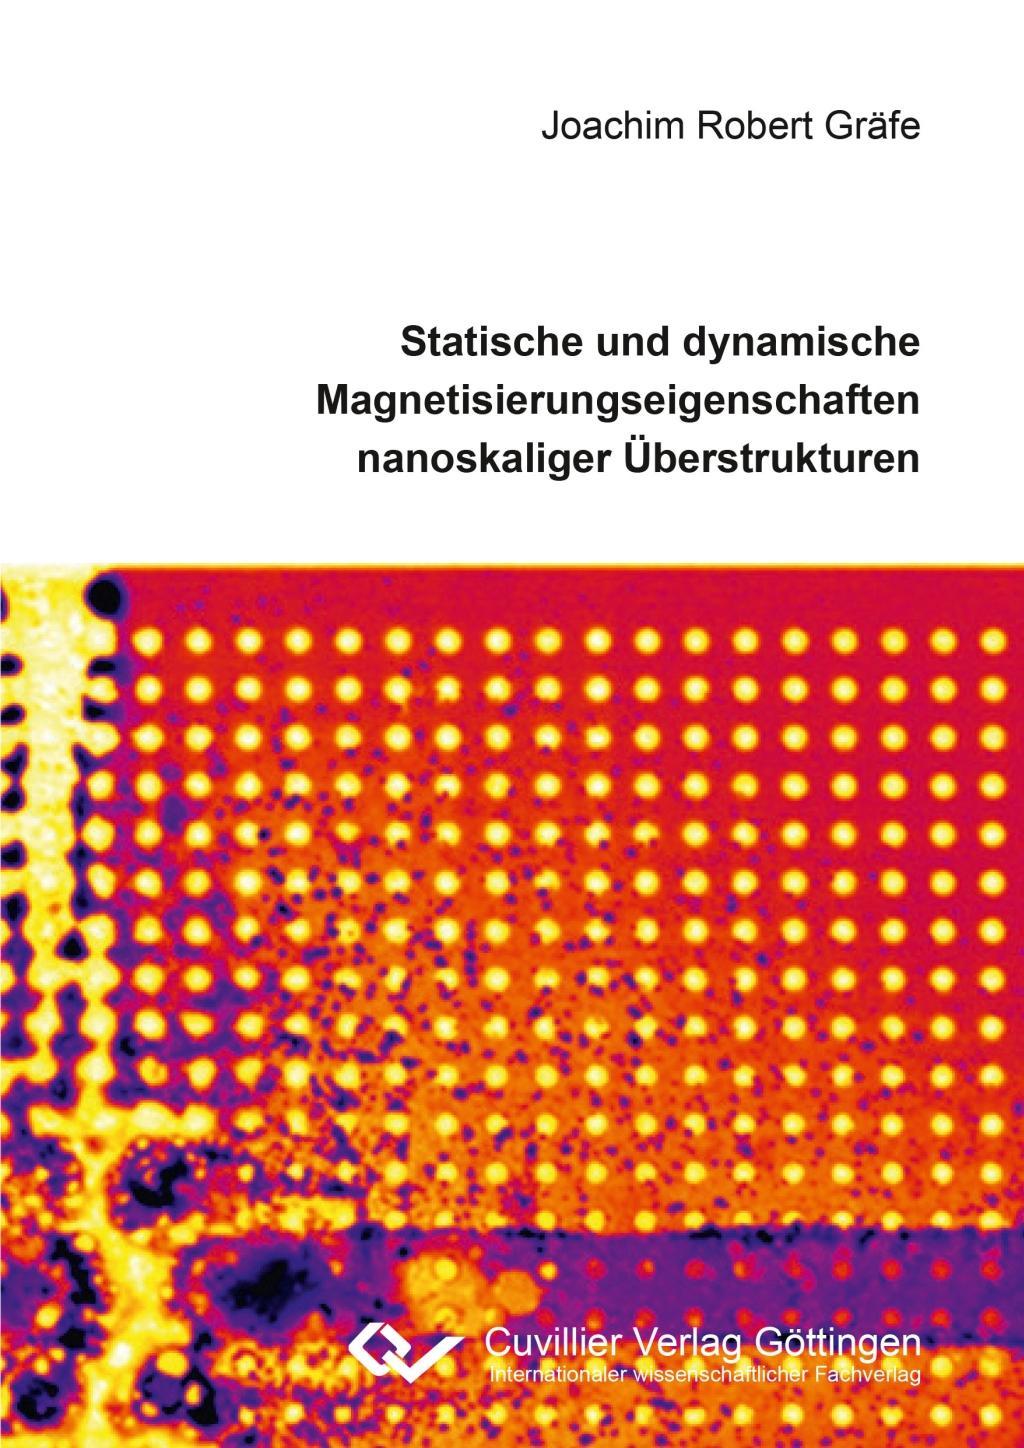 Carte Statische und dynamische Magnetisierungseigenschaften nanoskaliger Überstrukturen Joachim Gräfe